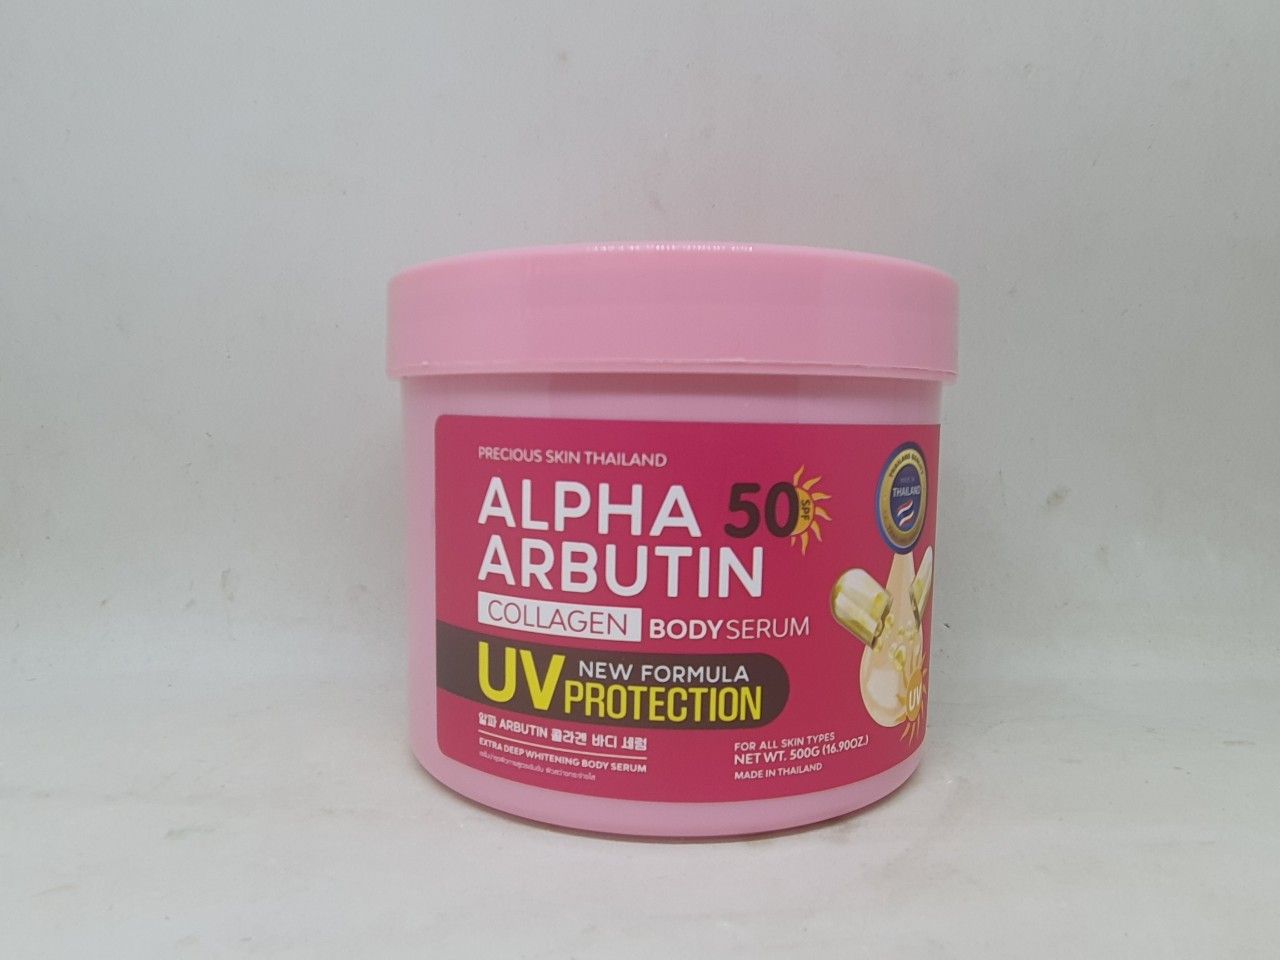  Kem dưỡng trắng chống nắng toàn thân alpha arbutin collagen body serum thái lan 500g 